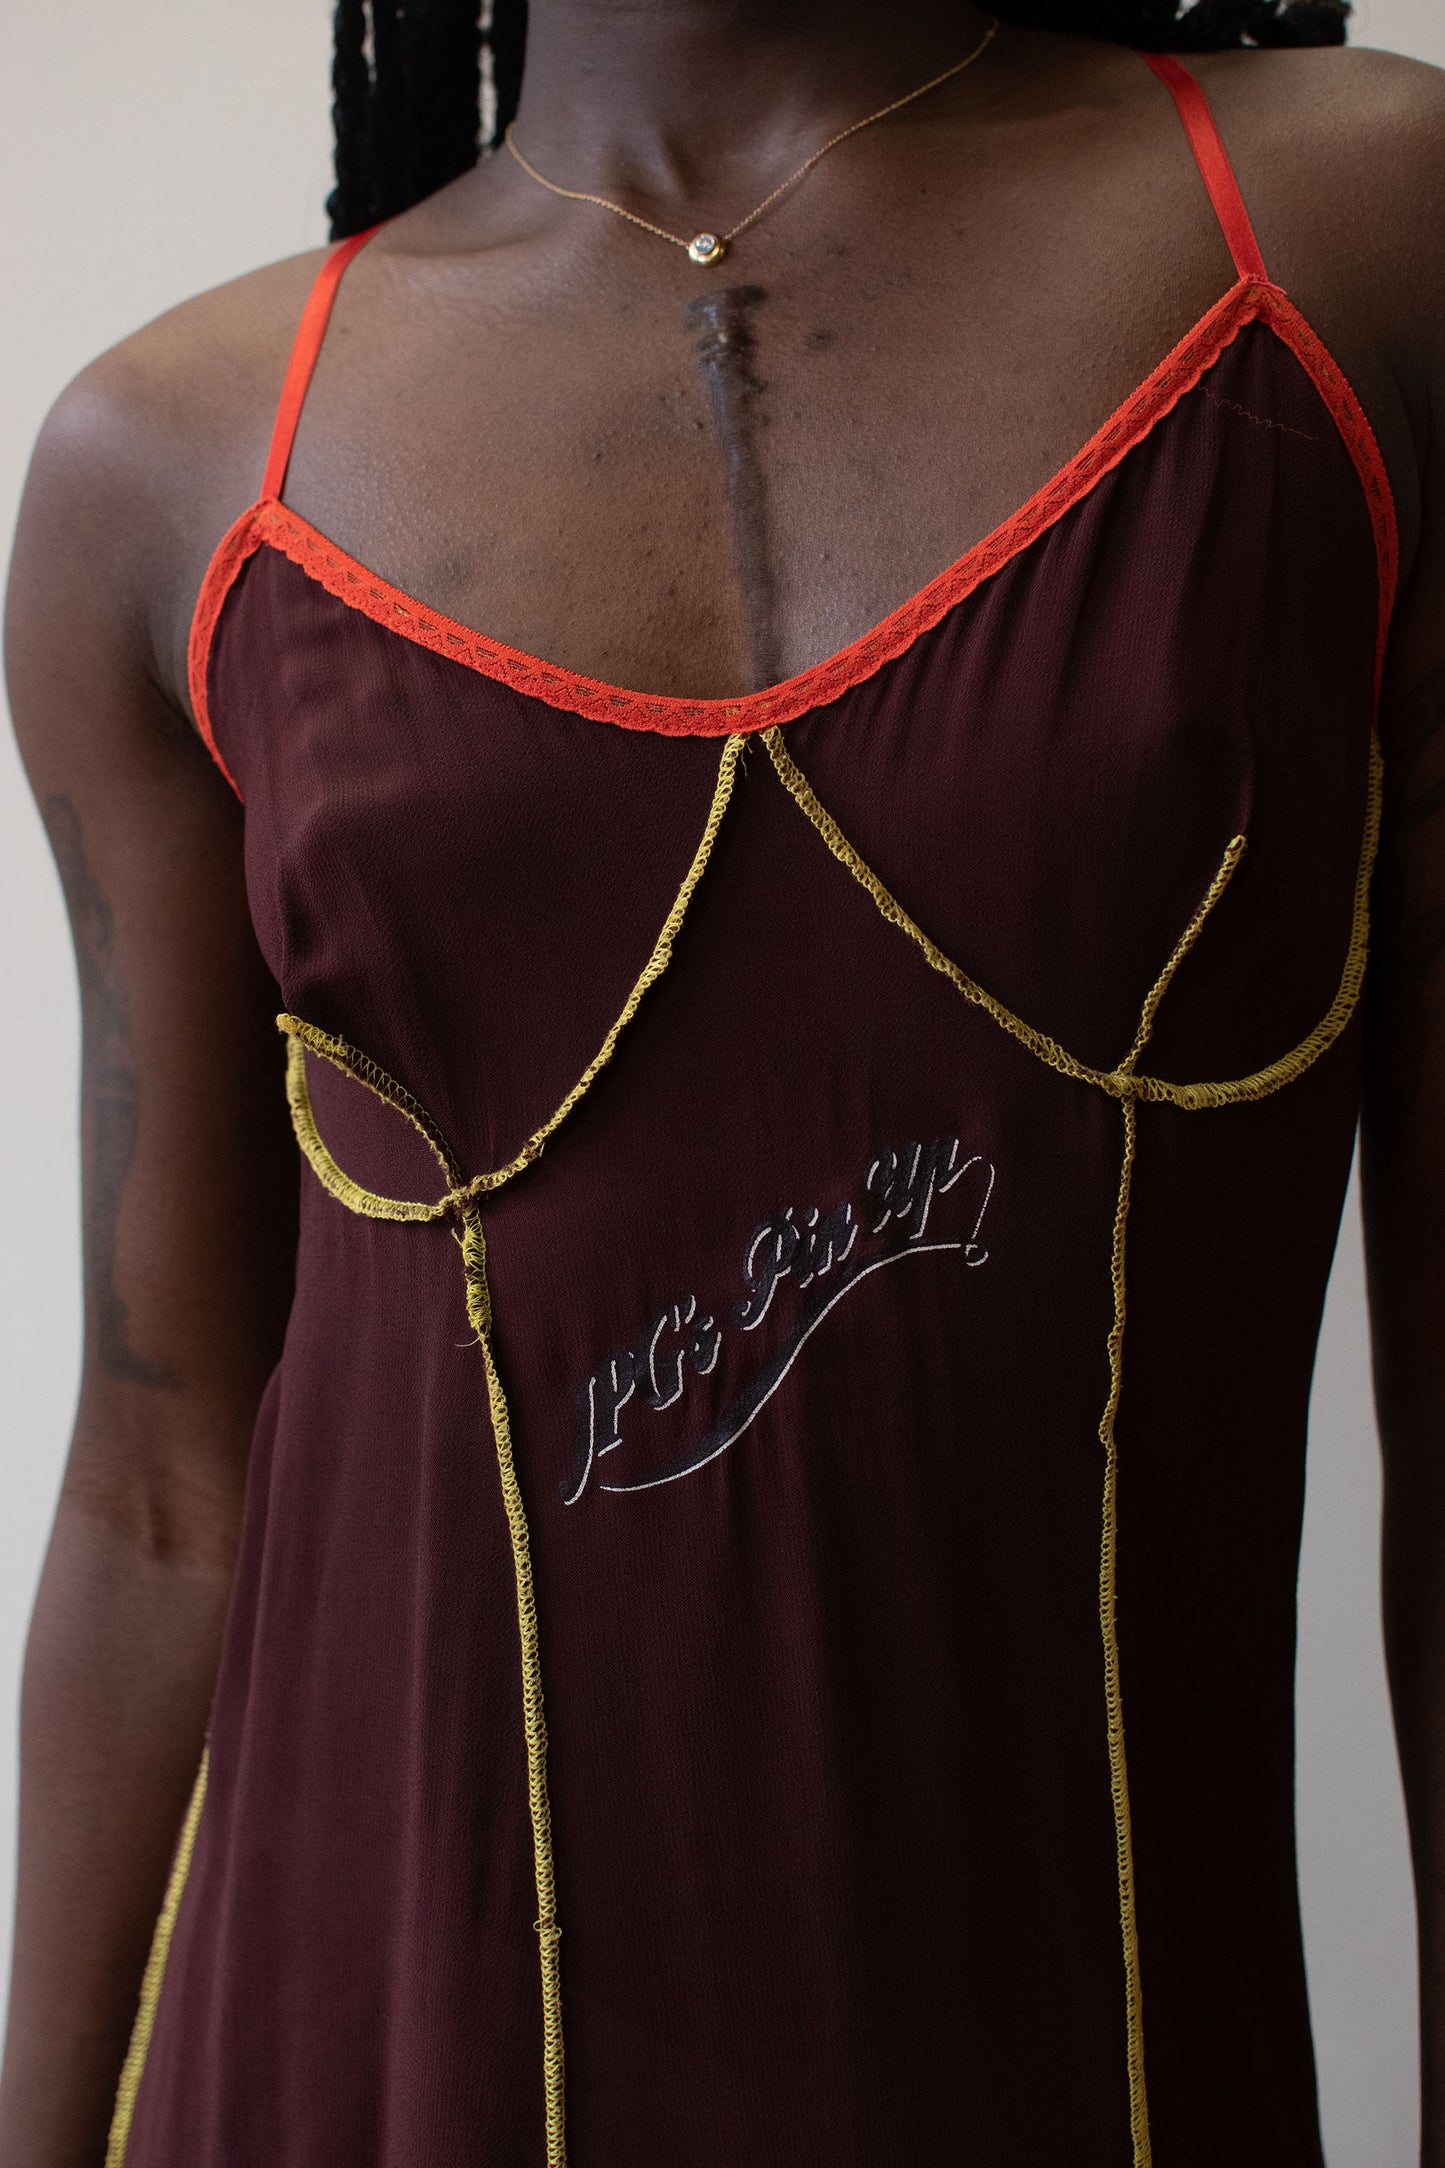 Slip Dress | Jean Paul Gaultier